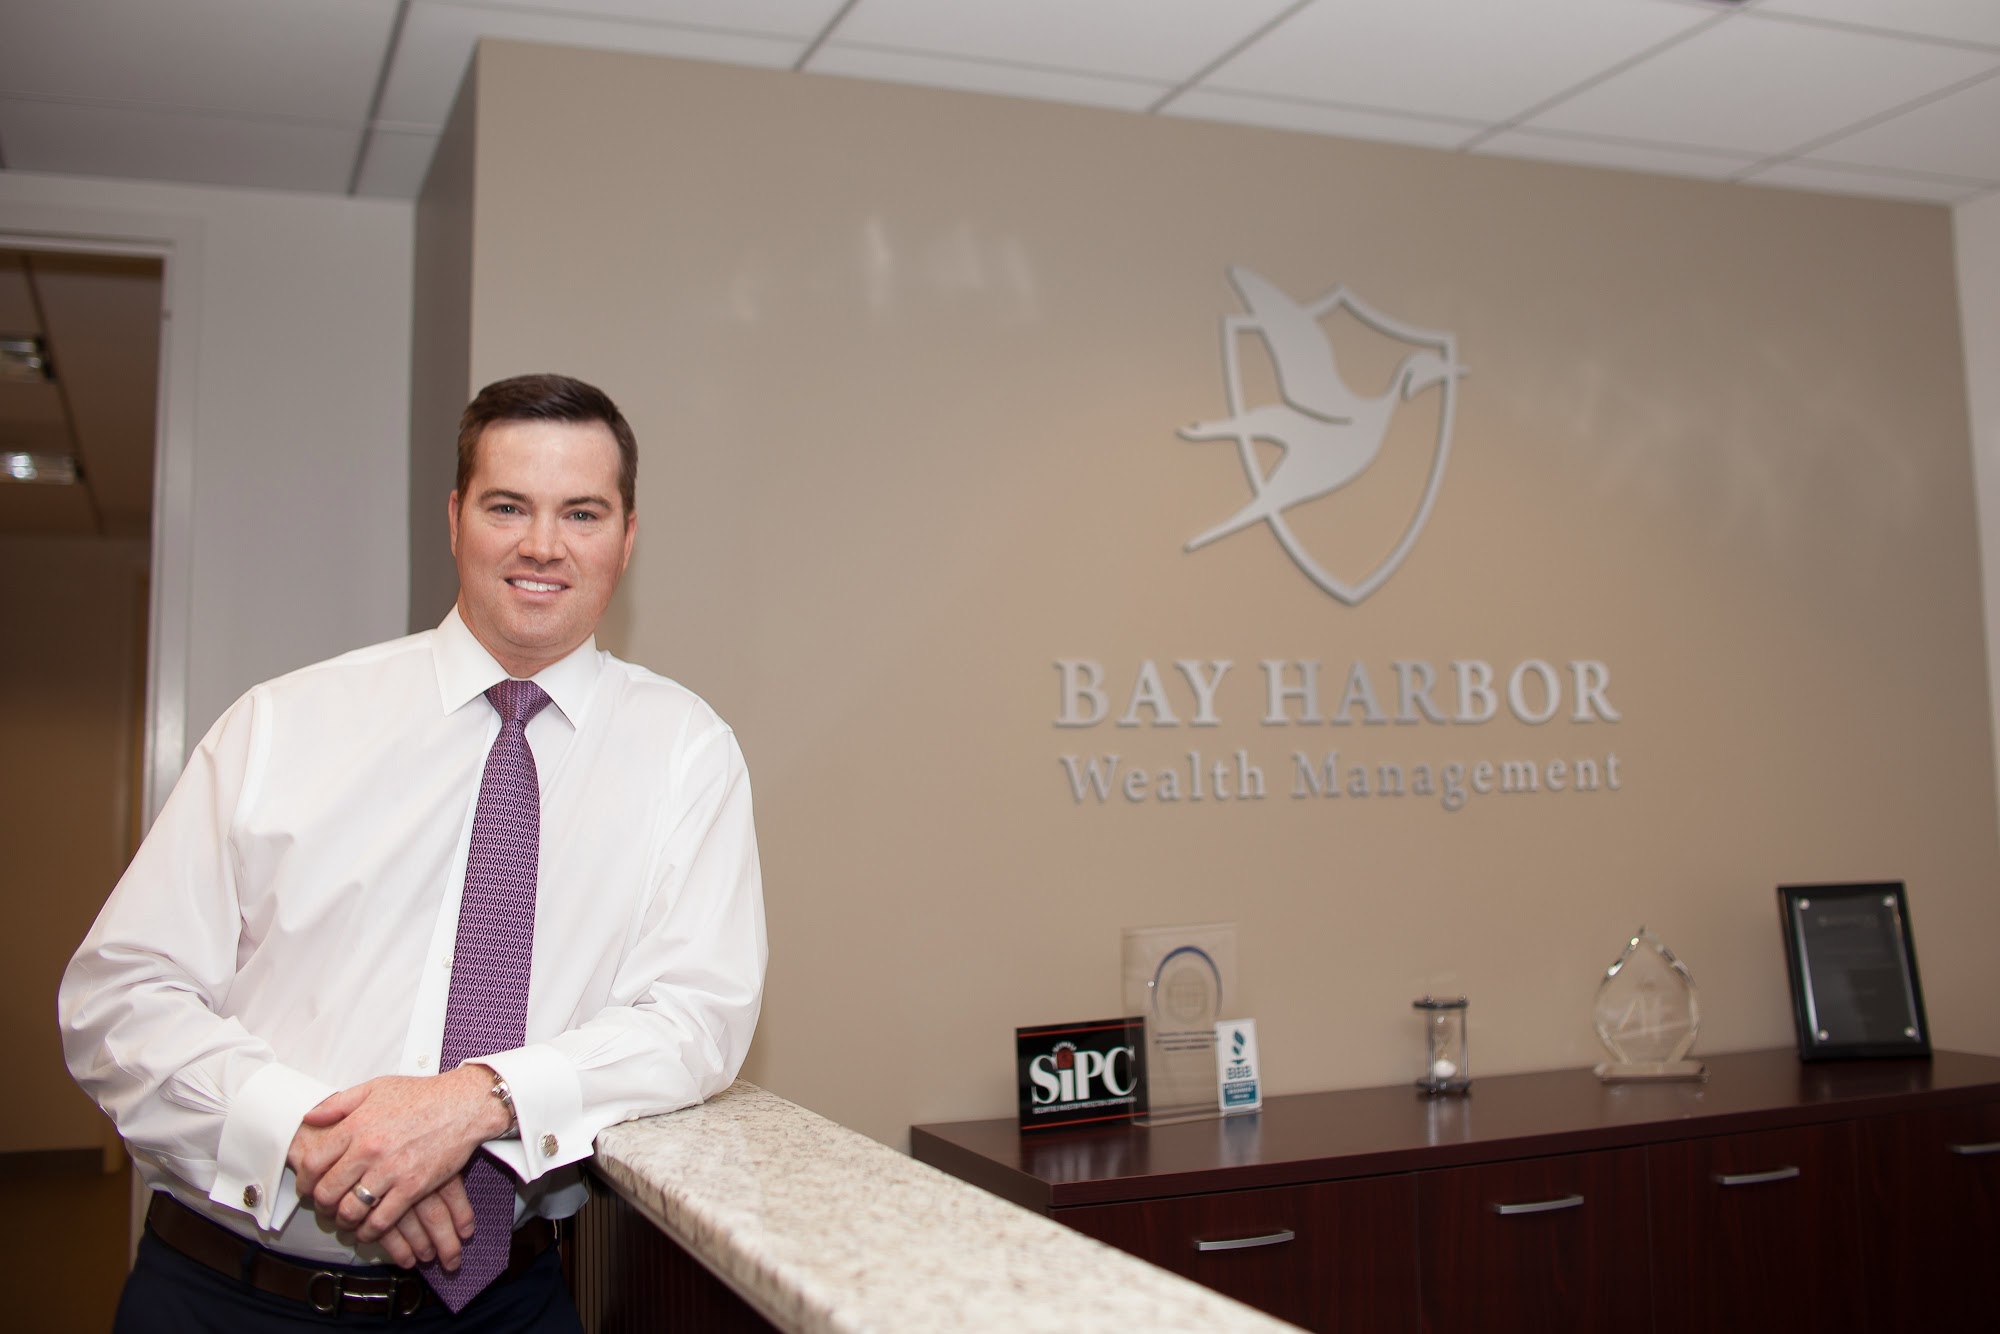 Bay Harbor Wealth Management